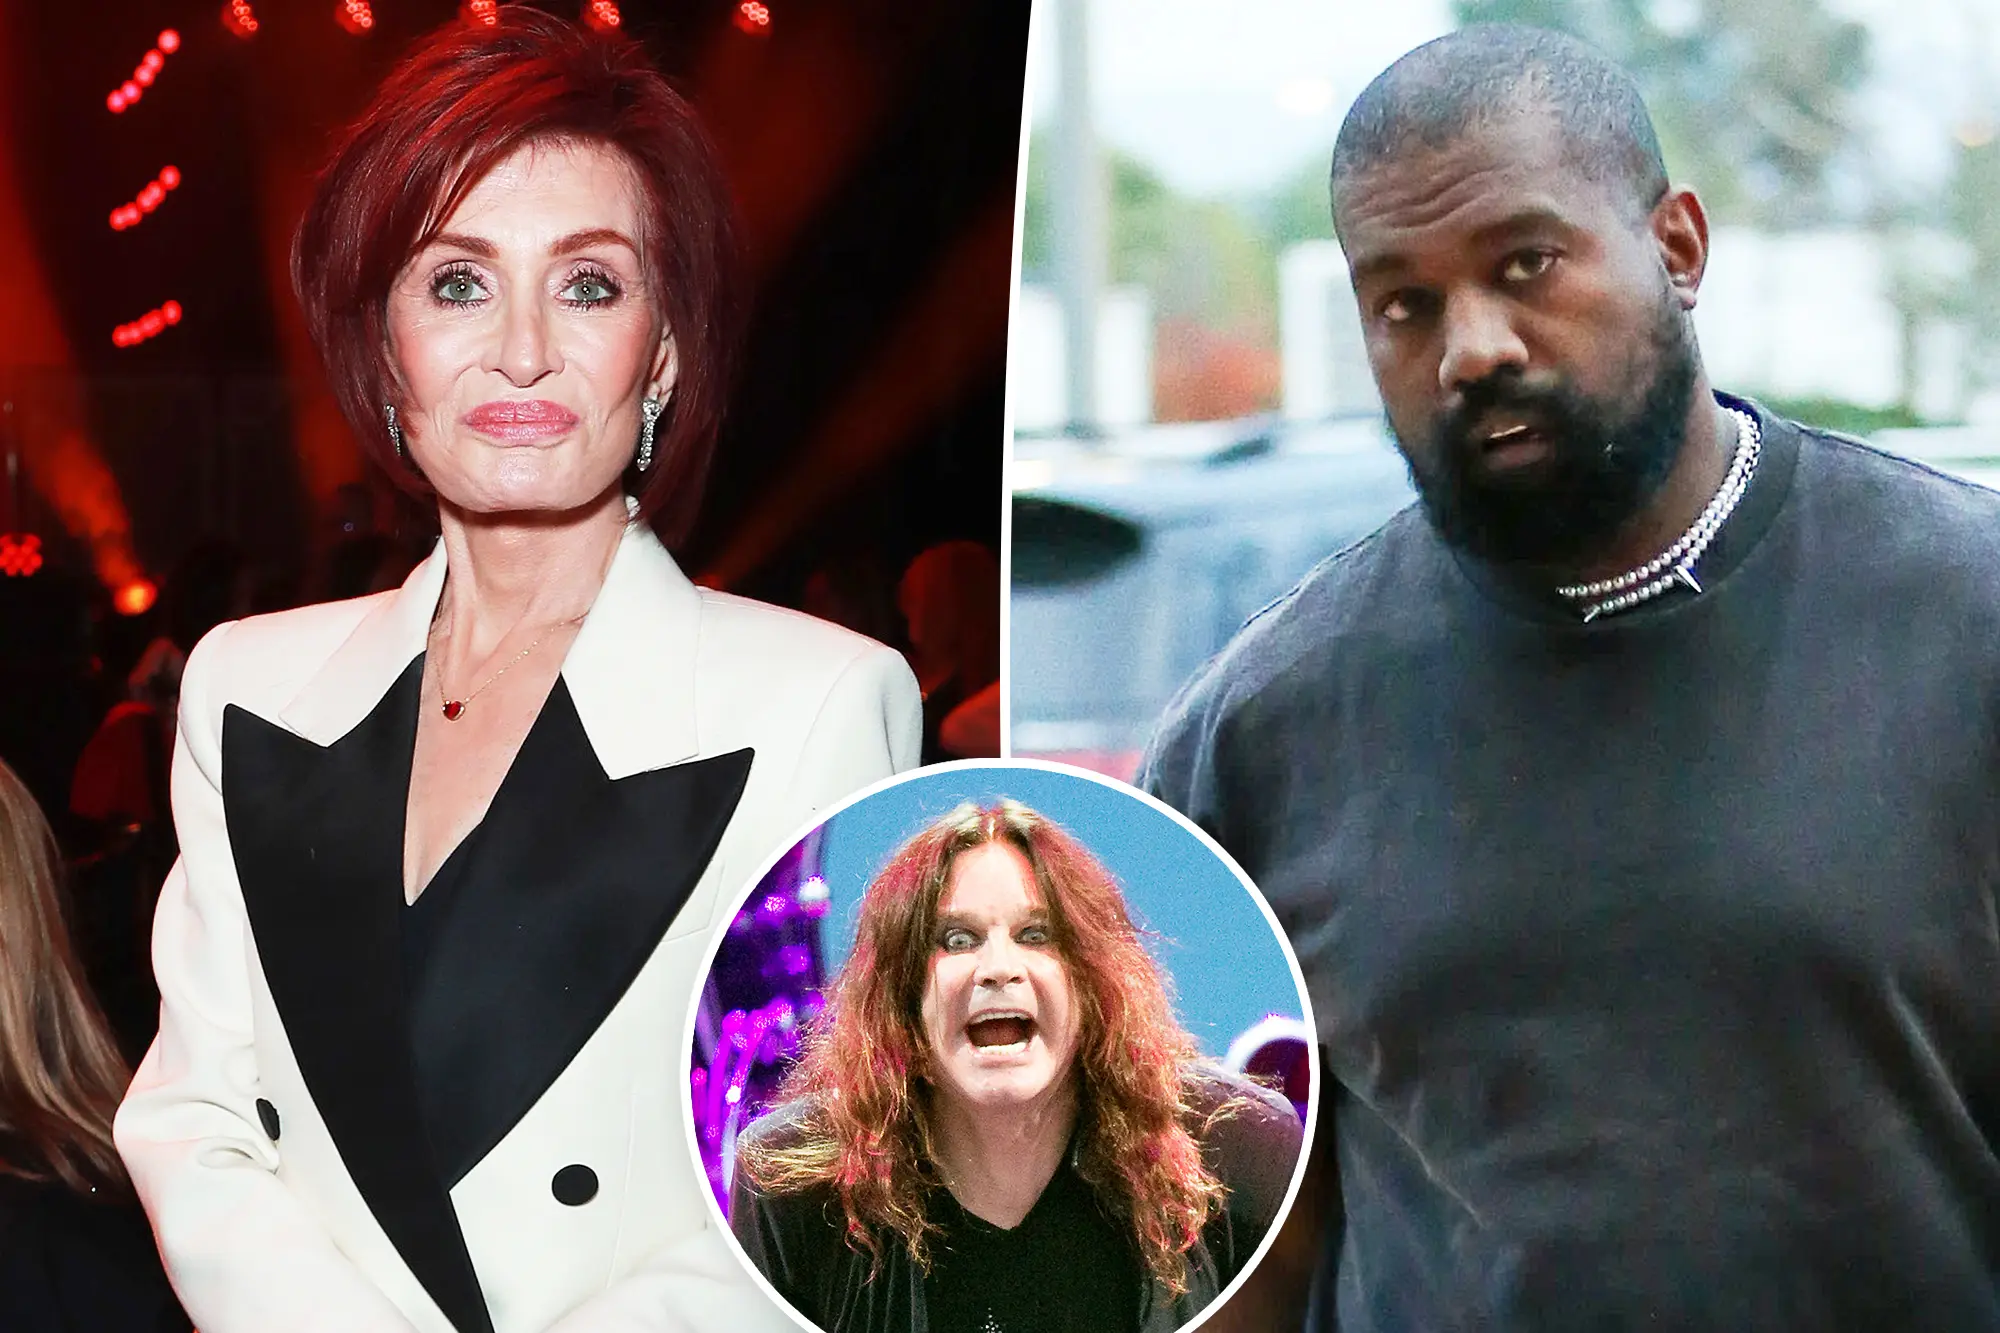 Sharon Osbourne Takes Aim at Kanye West